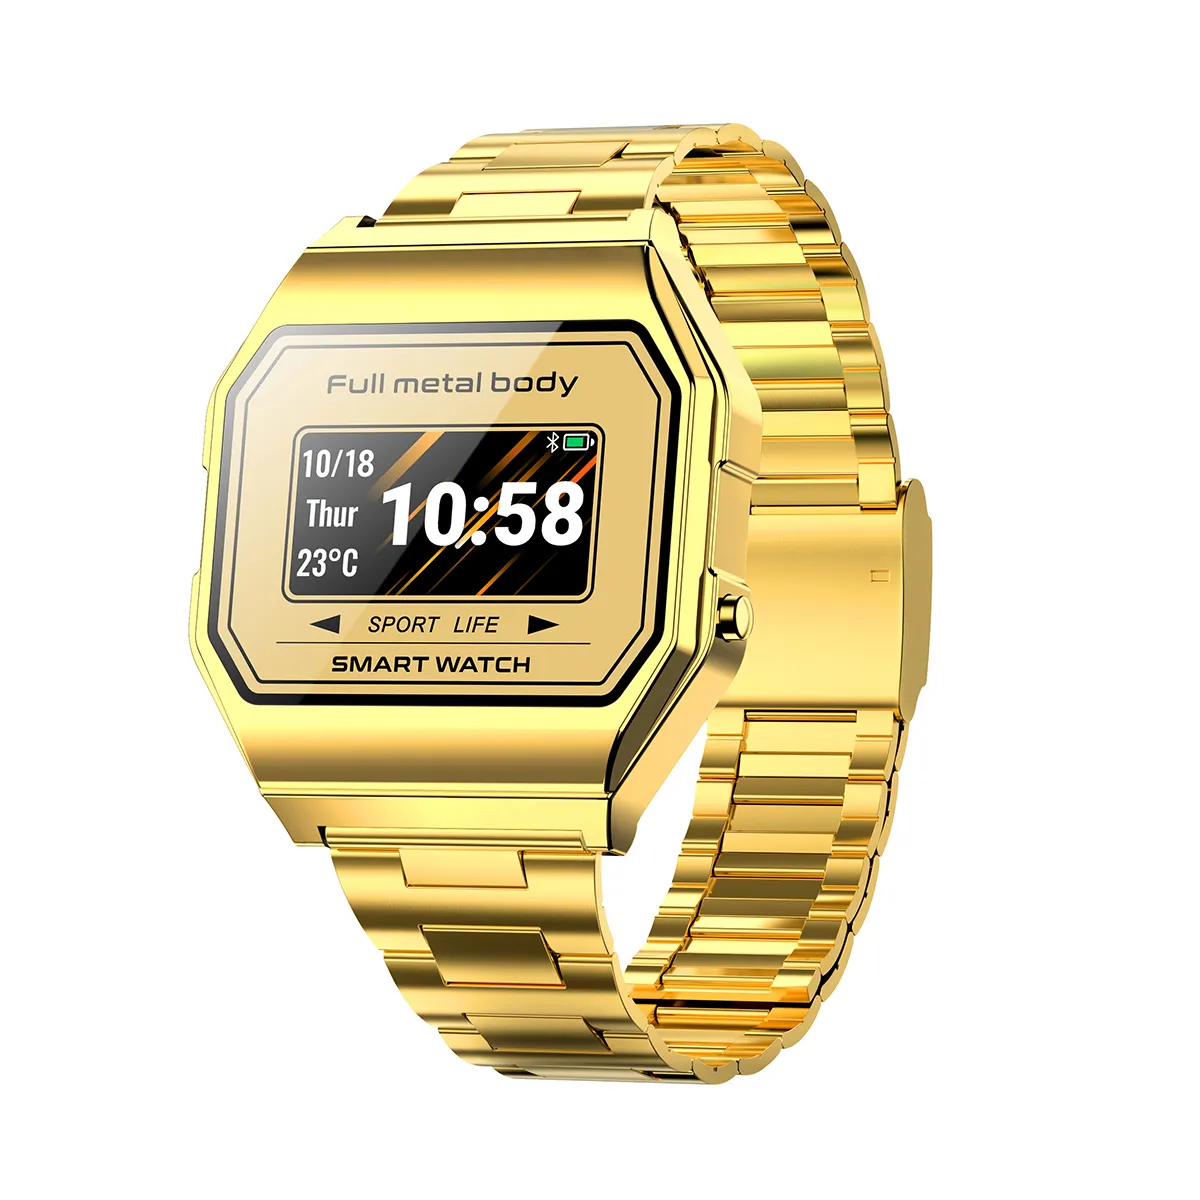 लक्जरी सोने की घड़ी फैशन स्टील बेल्ट डिजिटल स्मार्ट घड़ी जीपीएस कई खेल मोड लंबी बैटरी जीवन स्मार्ट घड़ी KW18